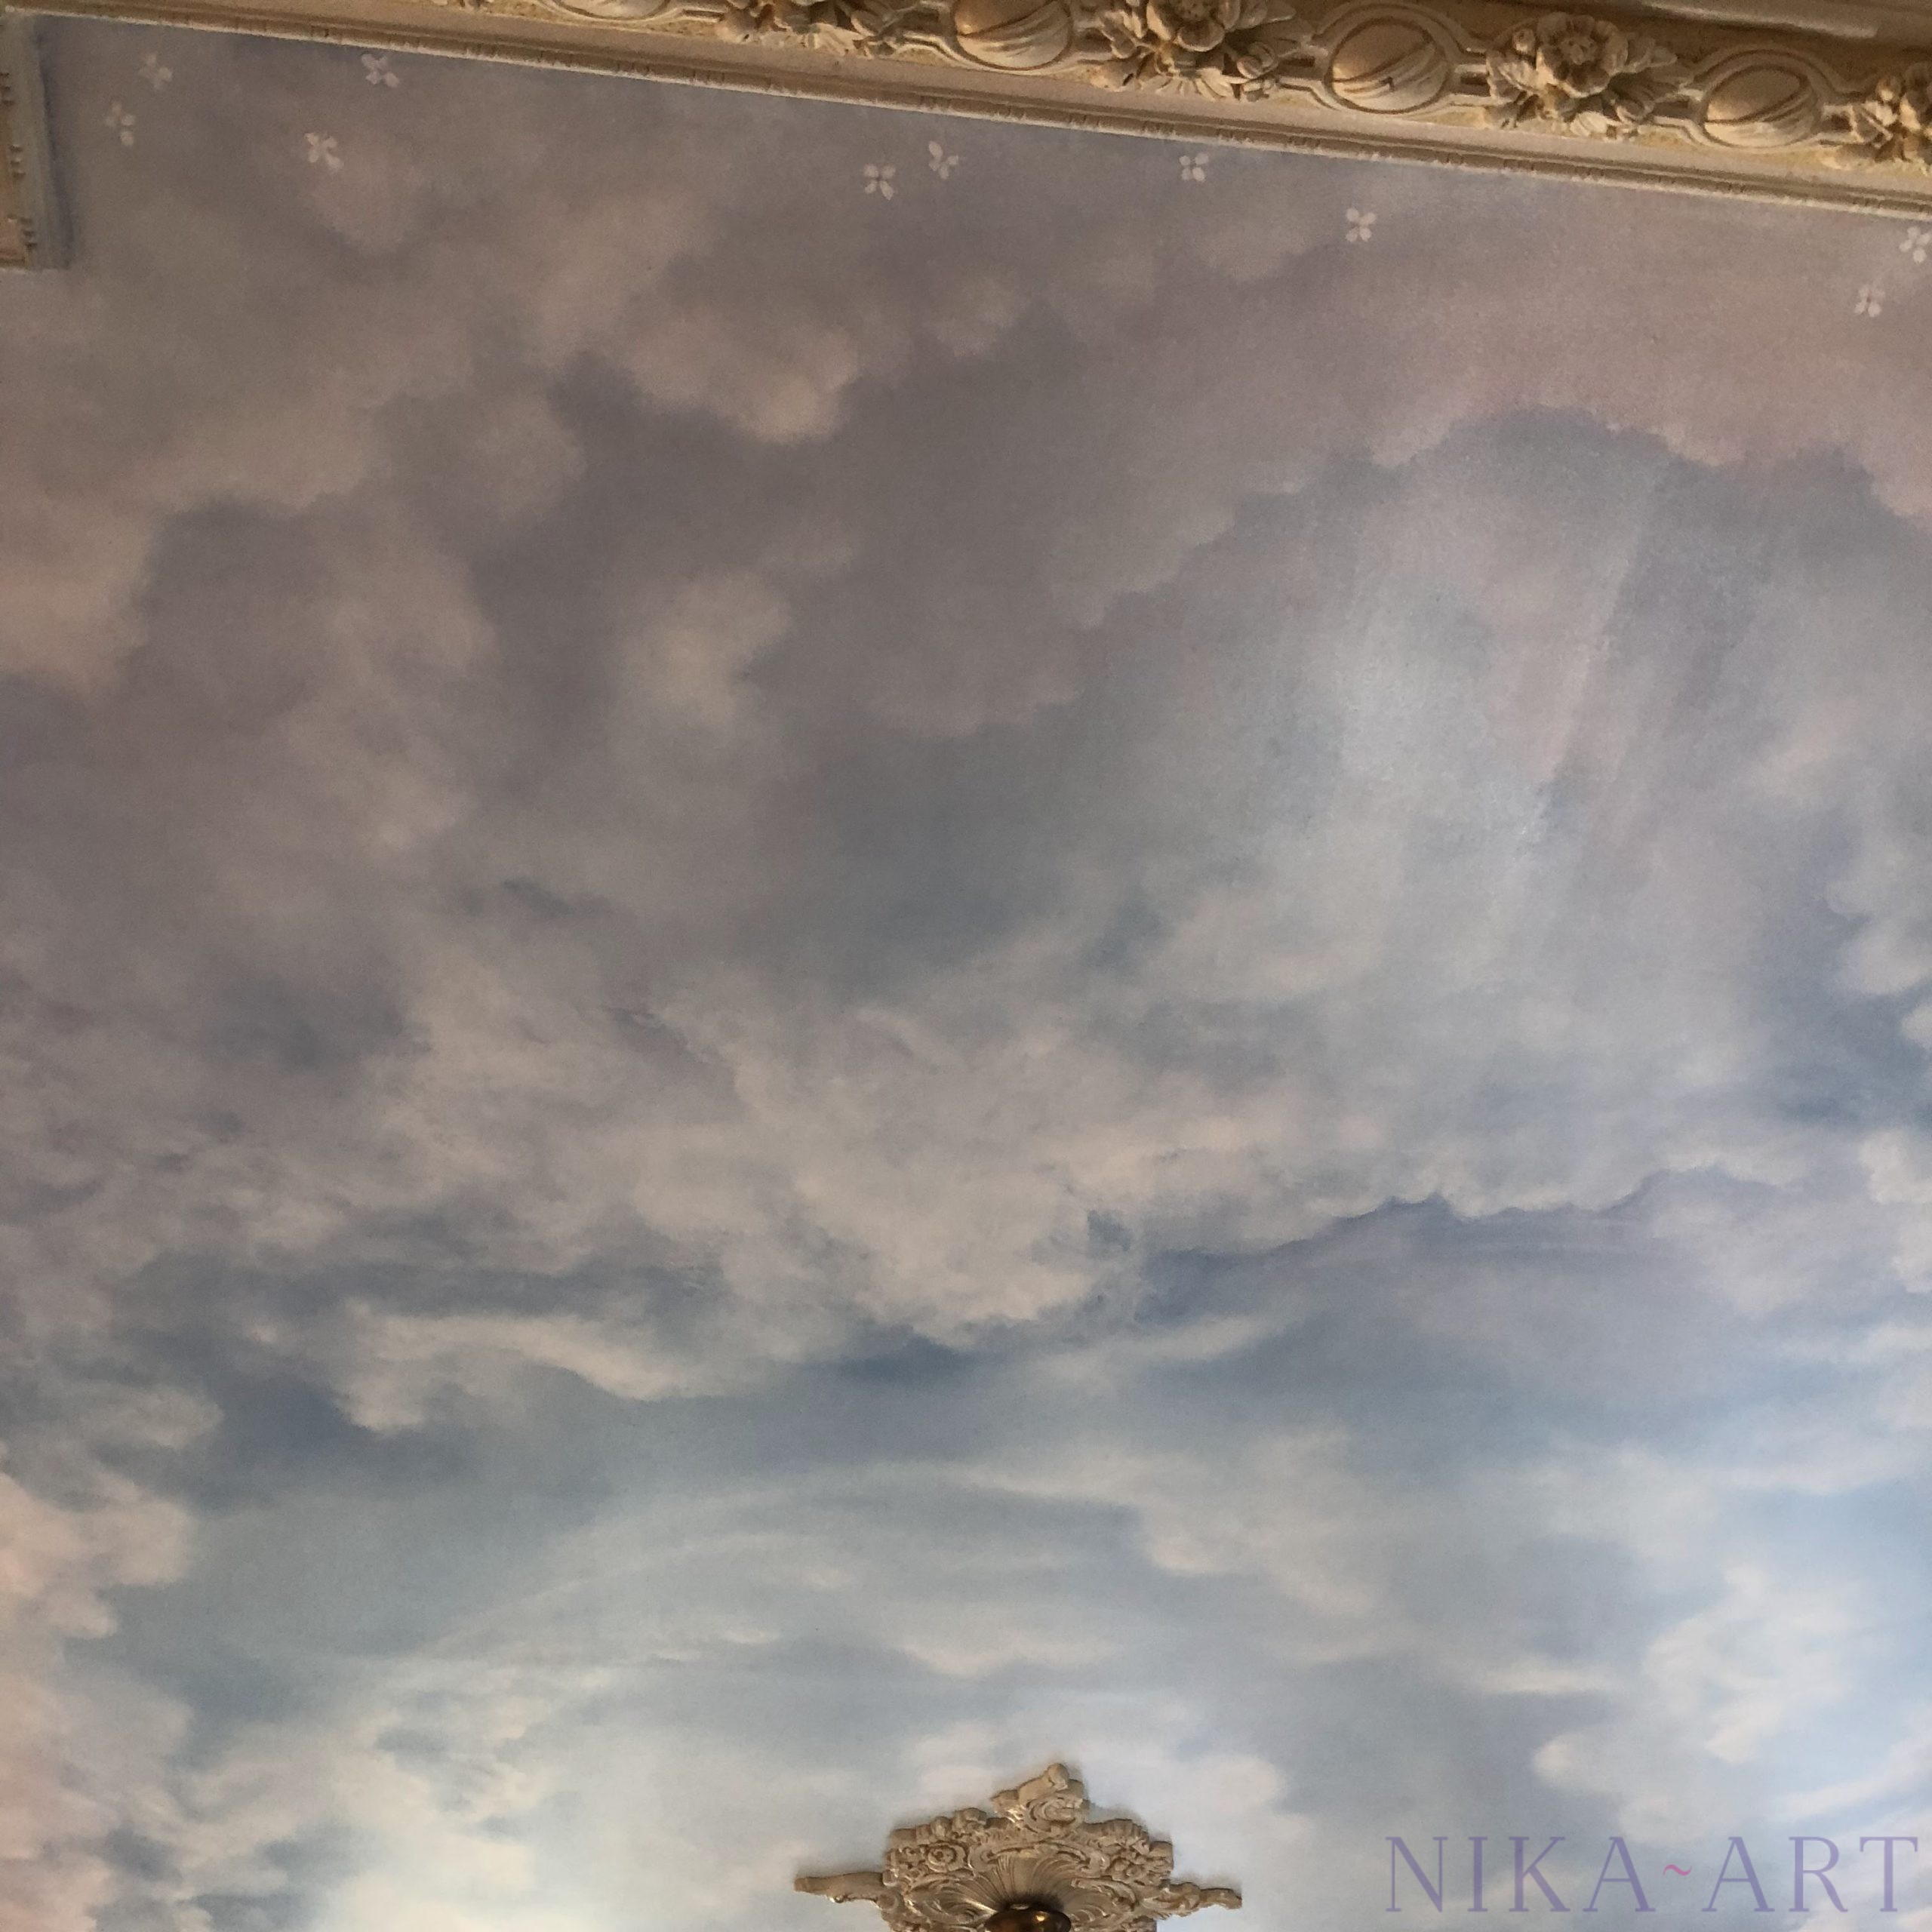 plafond-nuages-peints-trompe-loeil-nika